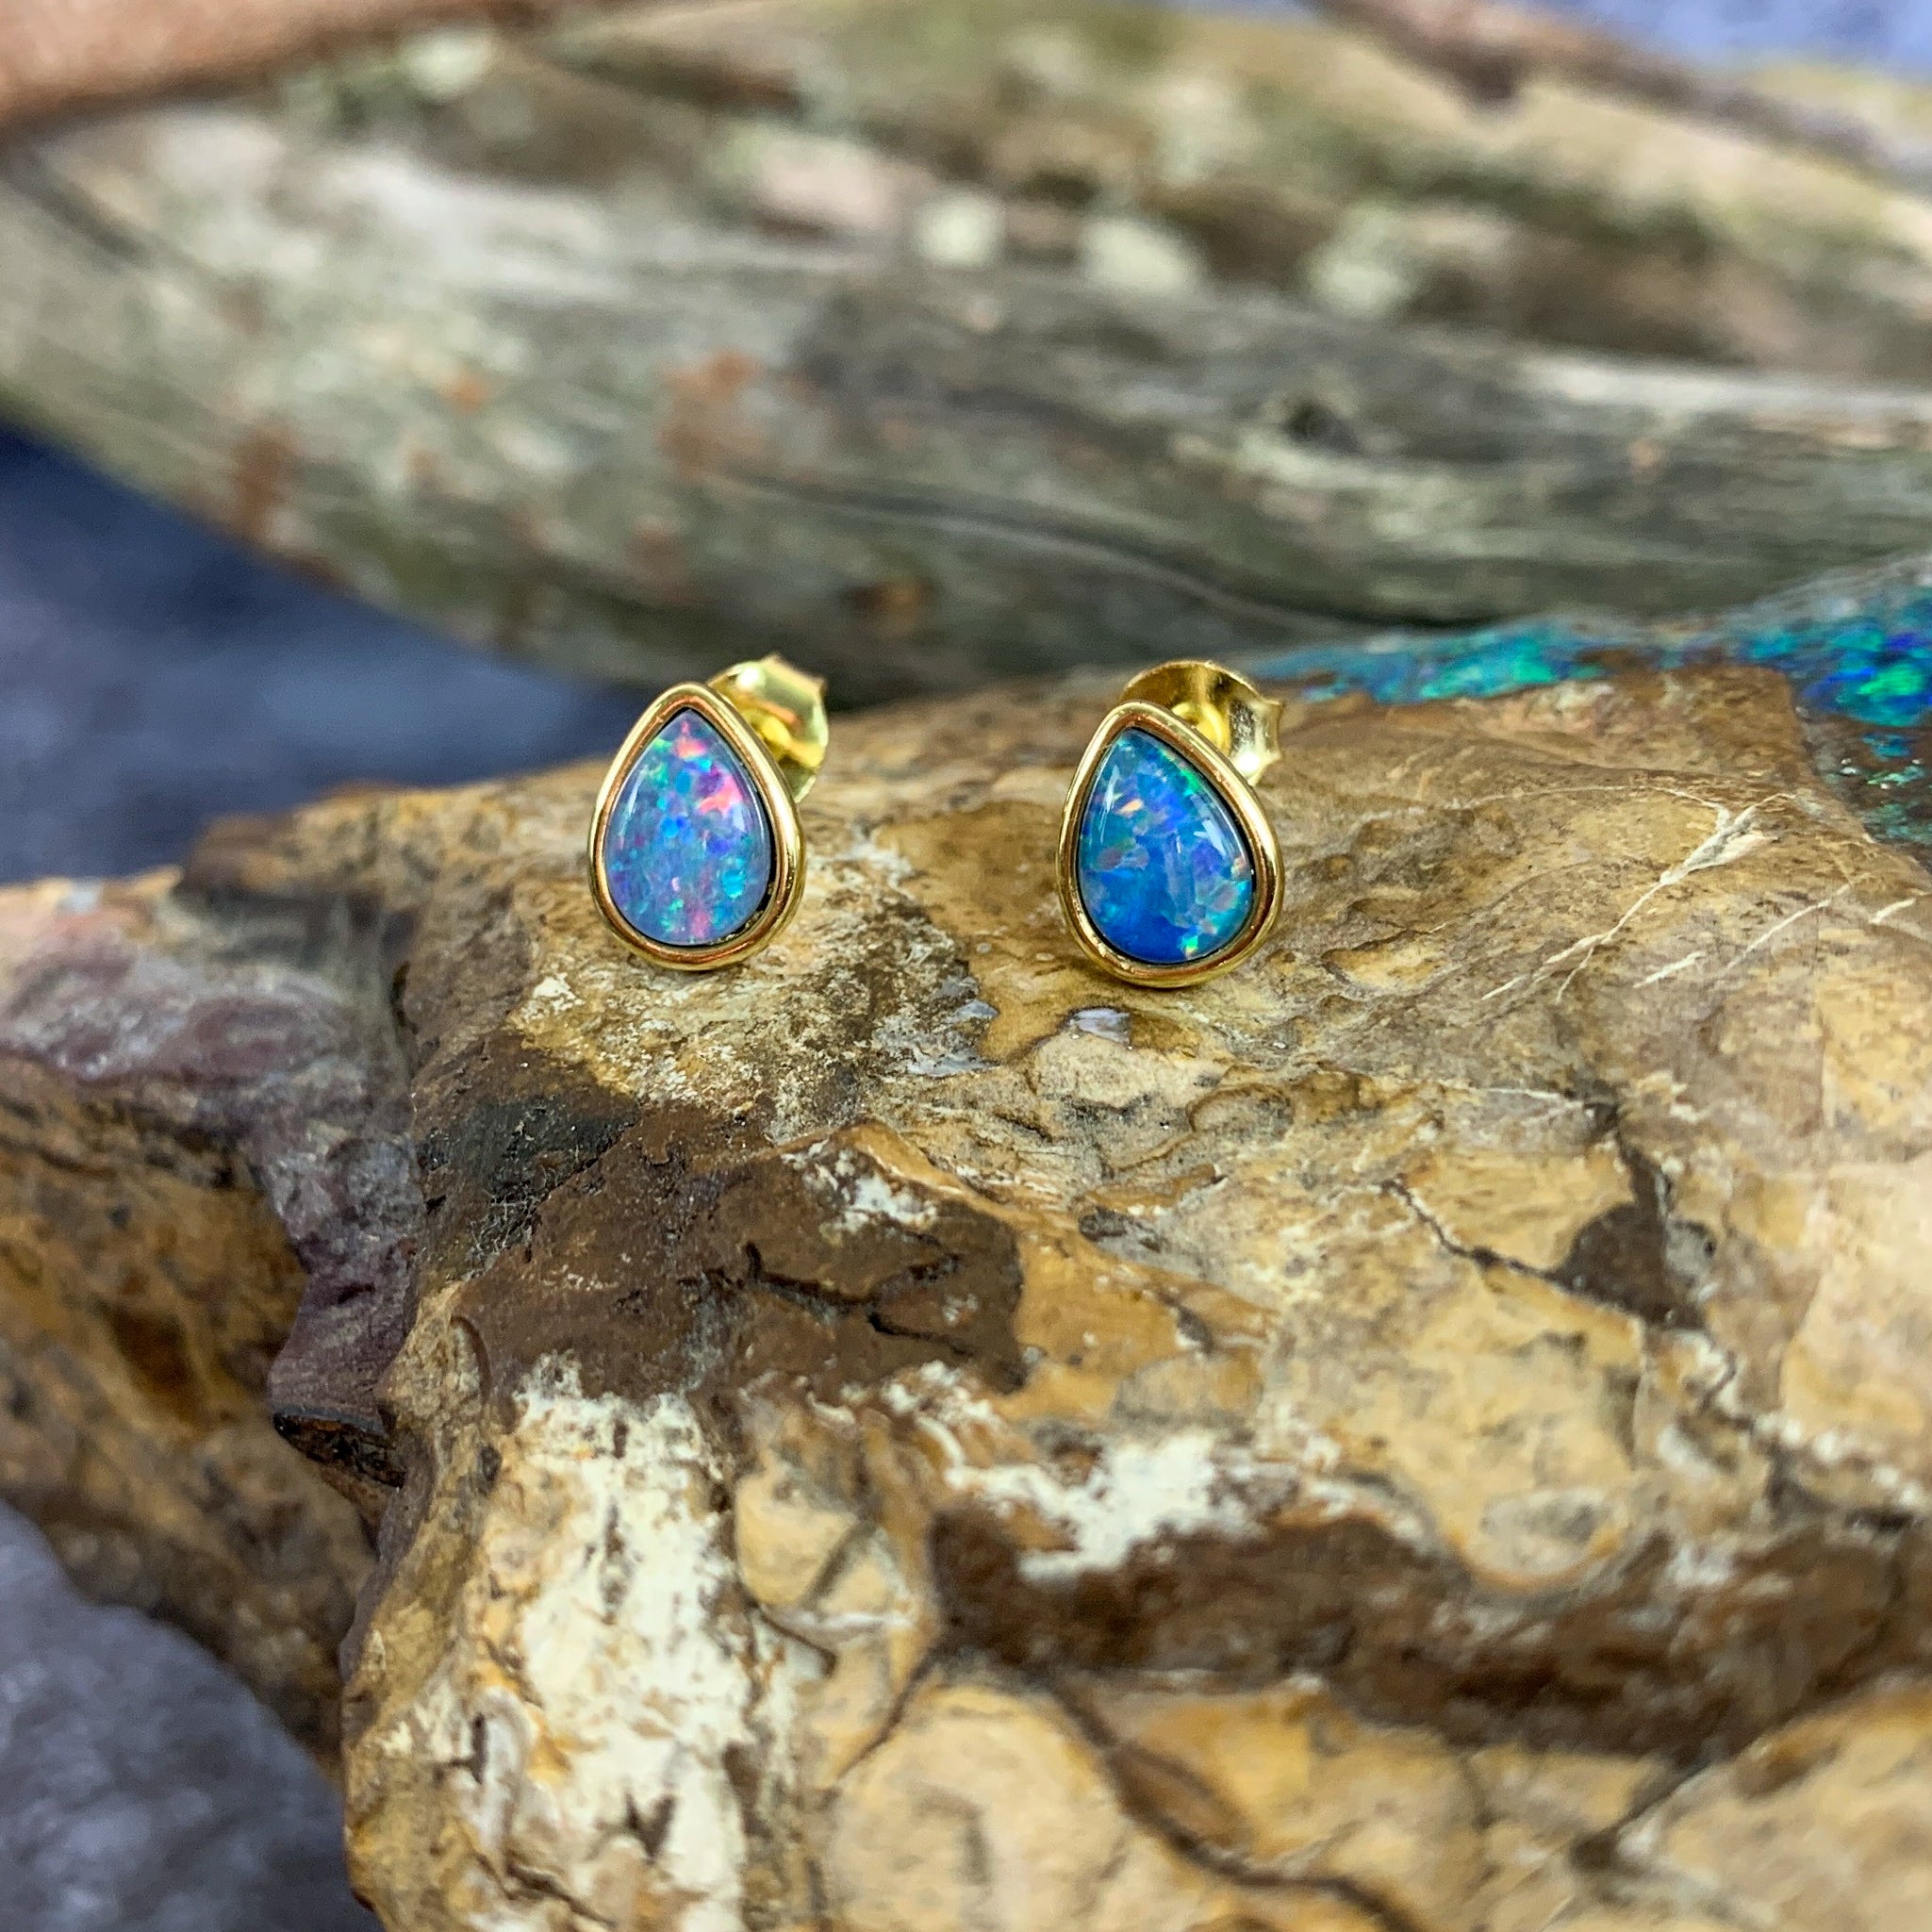 Gold plated Silver pair of earrings teardrop 8x5mm Opal triplet studs - Masterpiece Jewellery Opal & Gems Sydney Australia | Online Shop